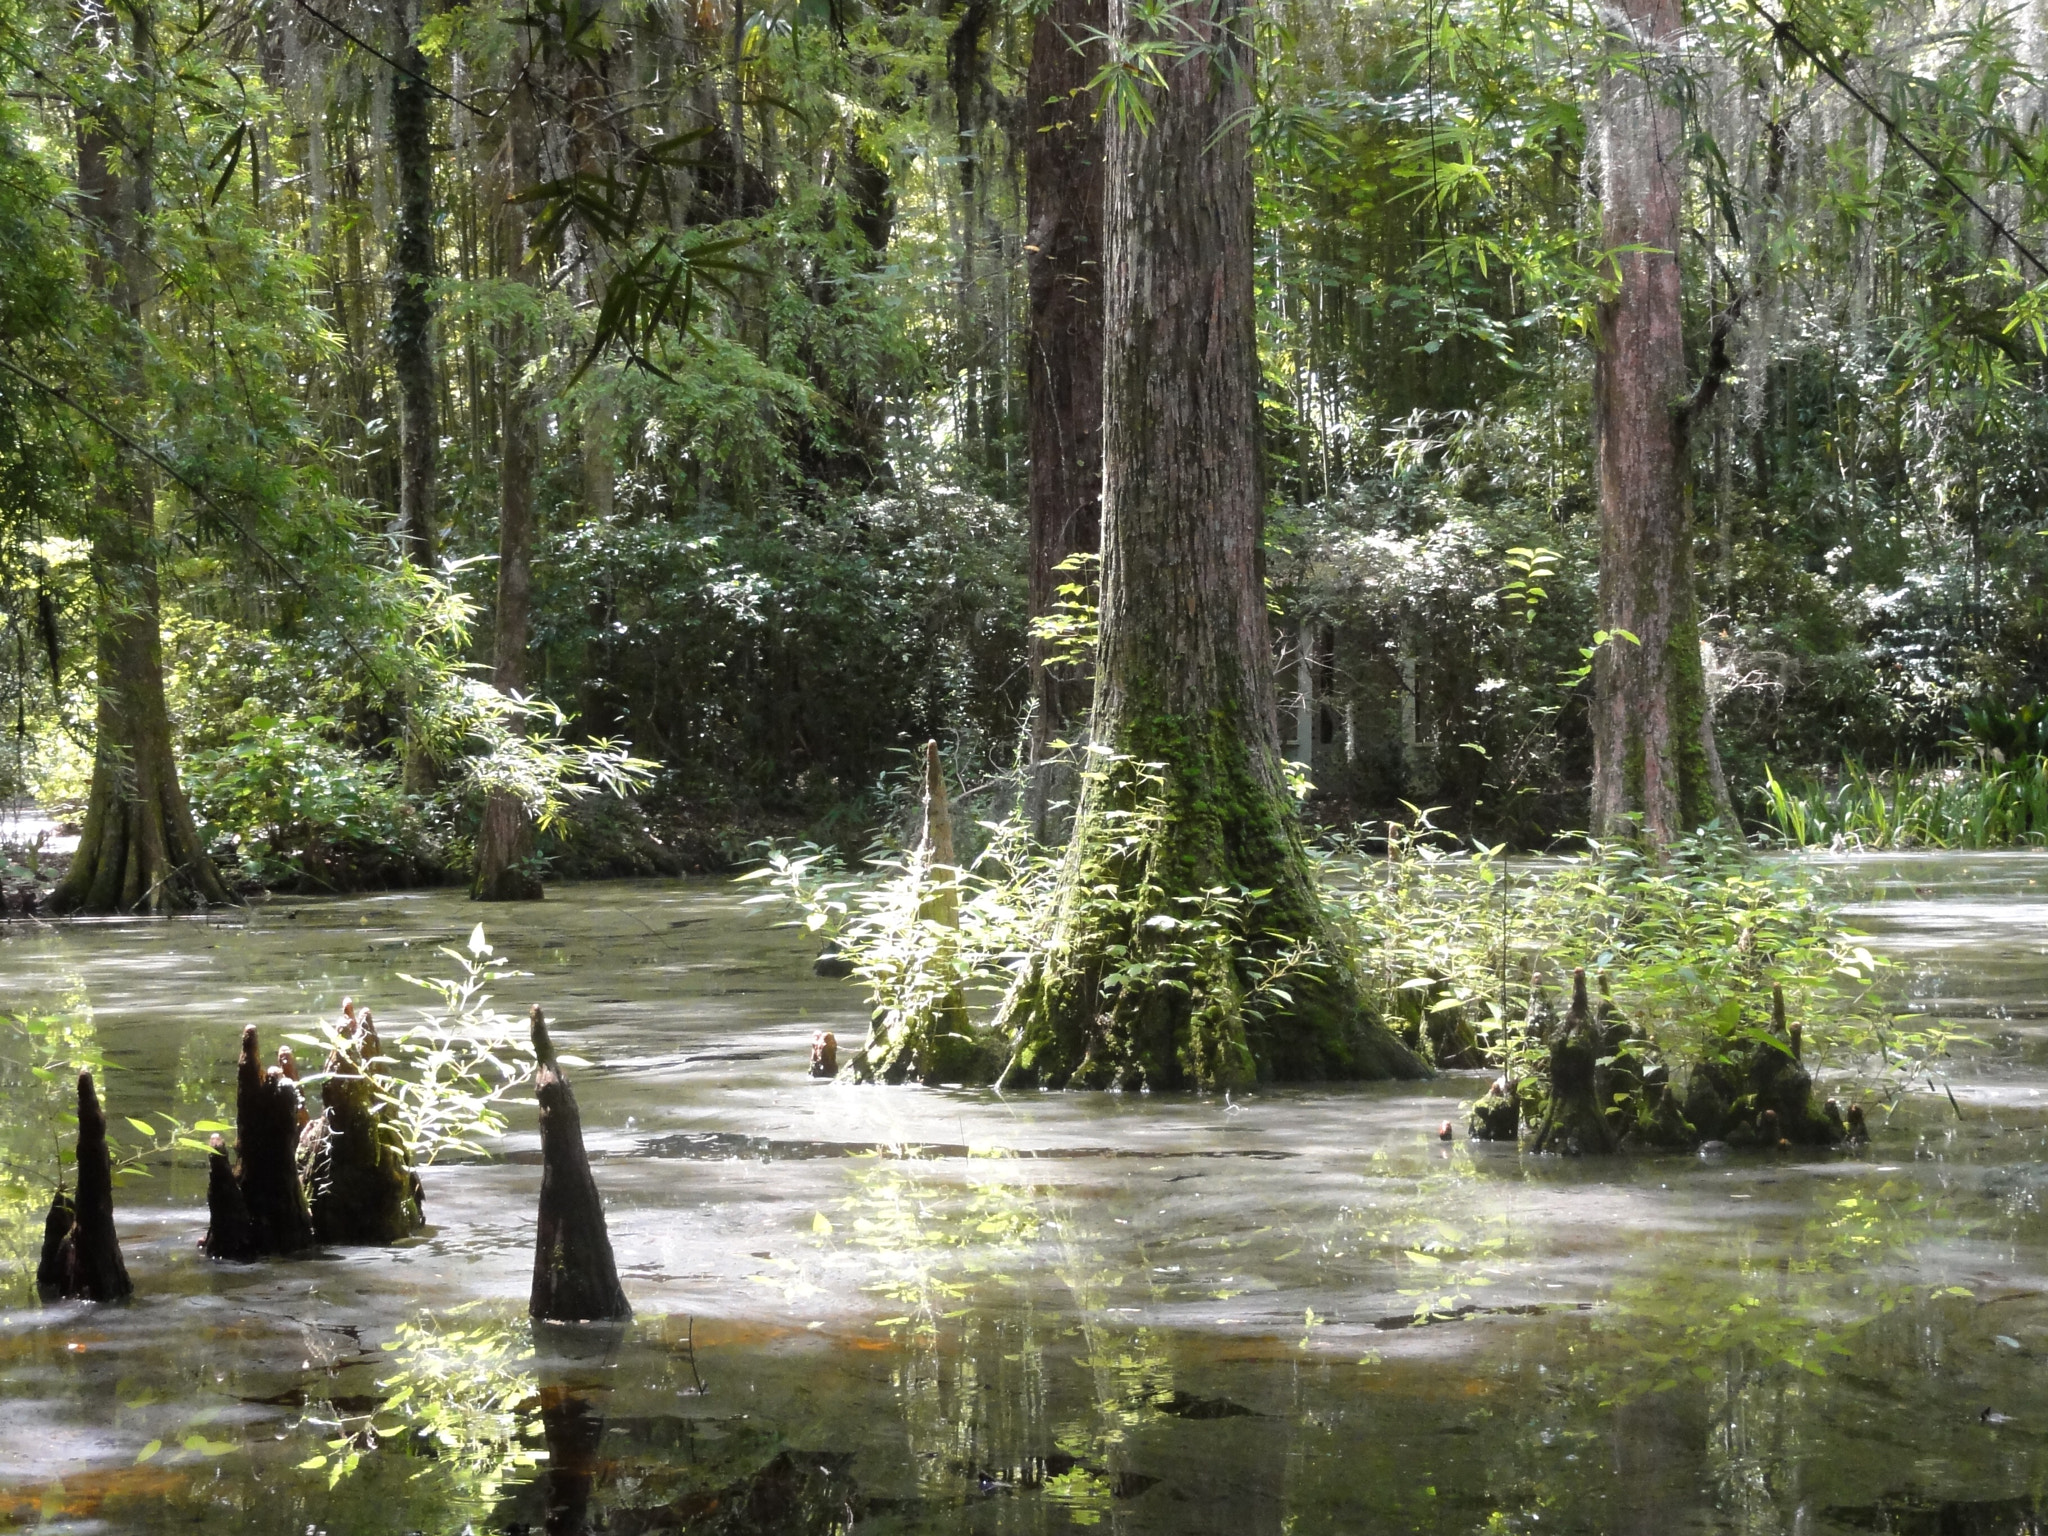 Sony DSC-HX5V sample photo. Swamp in magnolia plantation, south carolina (usa) photography